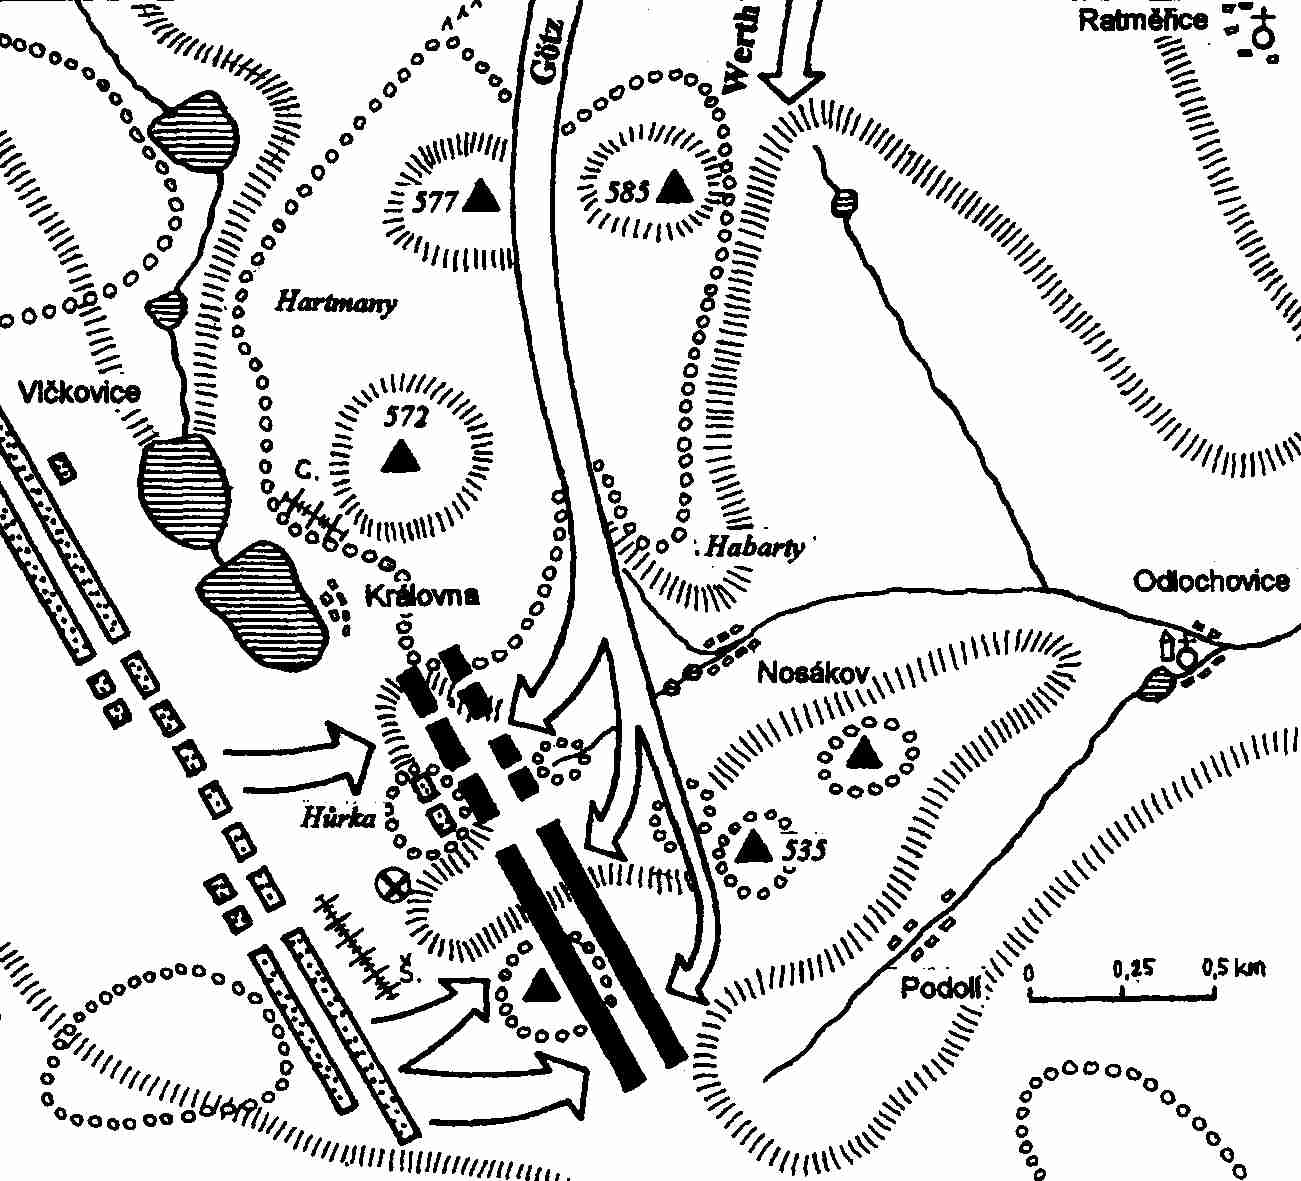  Götzův protiútok v bitvě u Jankova   ( X - místo, kde Götz pravděpodobně padl)